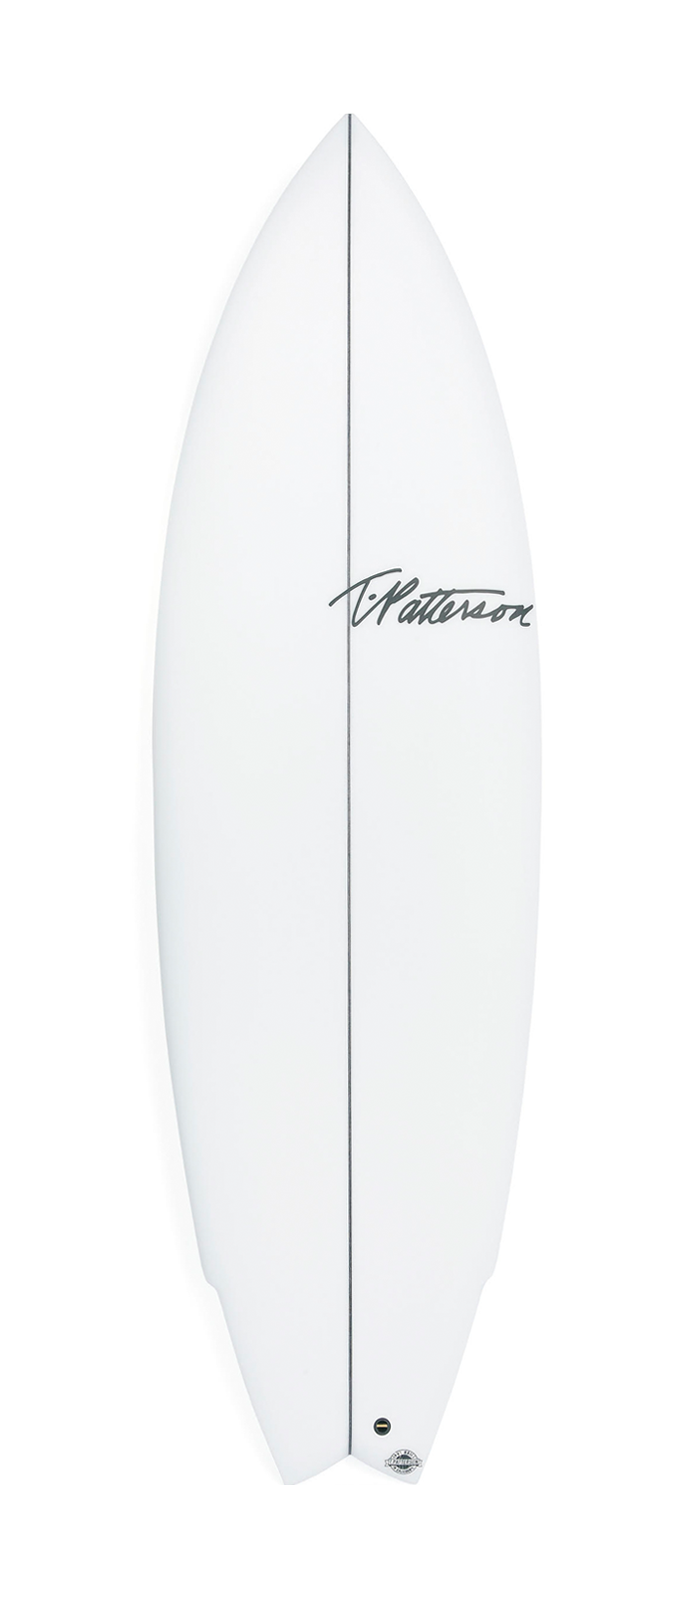 TWINNER surfboard model